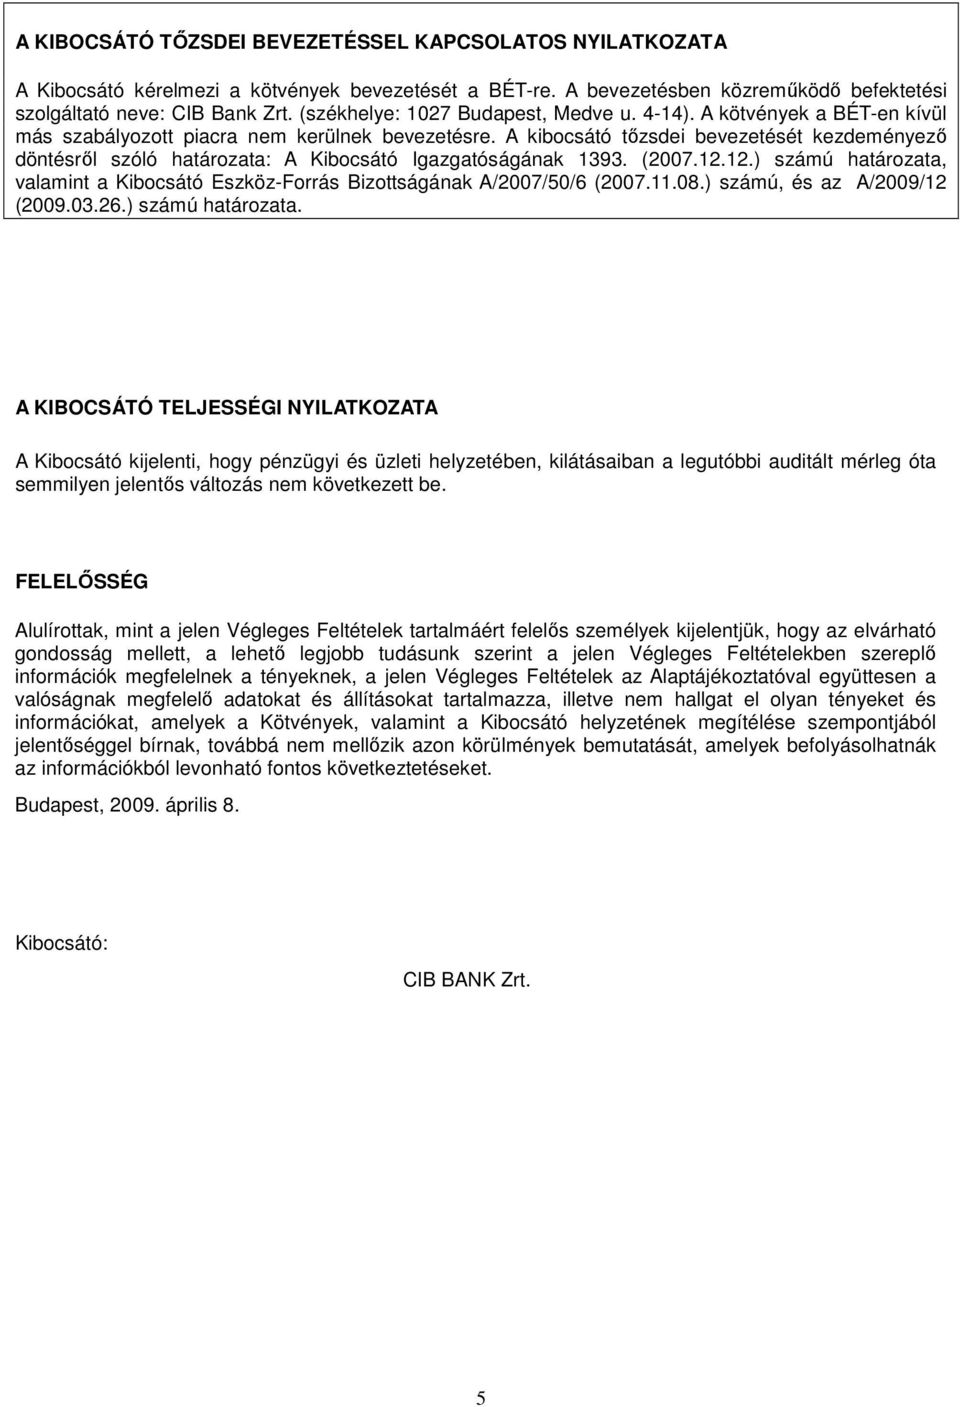 A kibocsátó tızsdei bevezetését kezdeményezı döntésrıl szóló határozata: A Kibocsátó Igazgatóságának 1393. (2007.12.